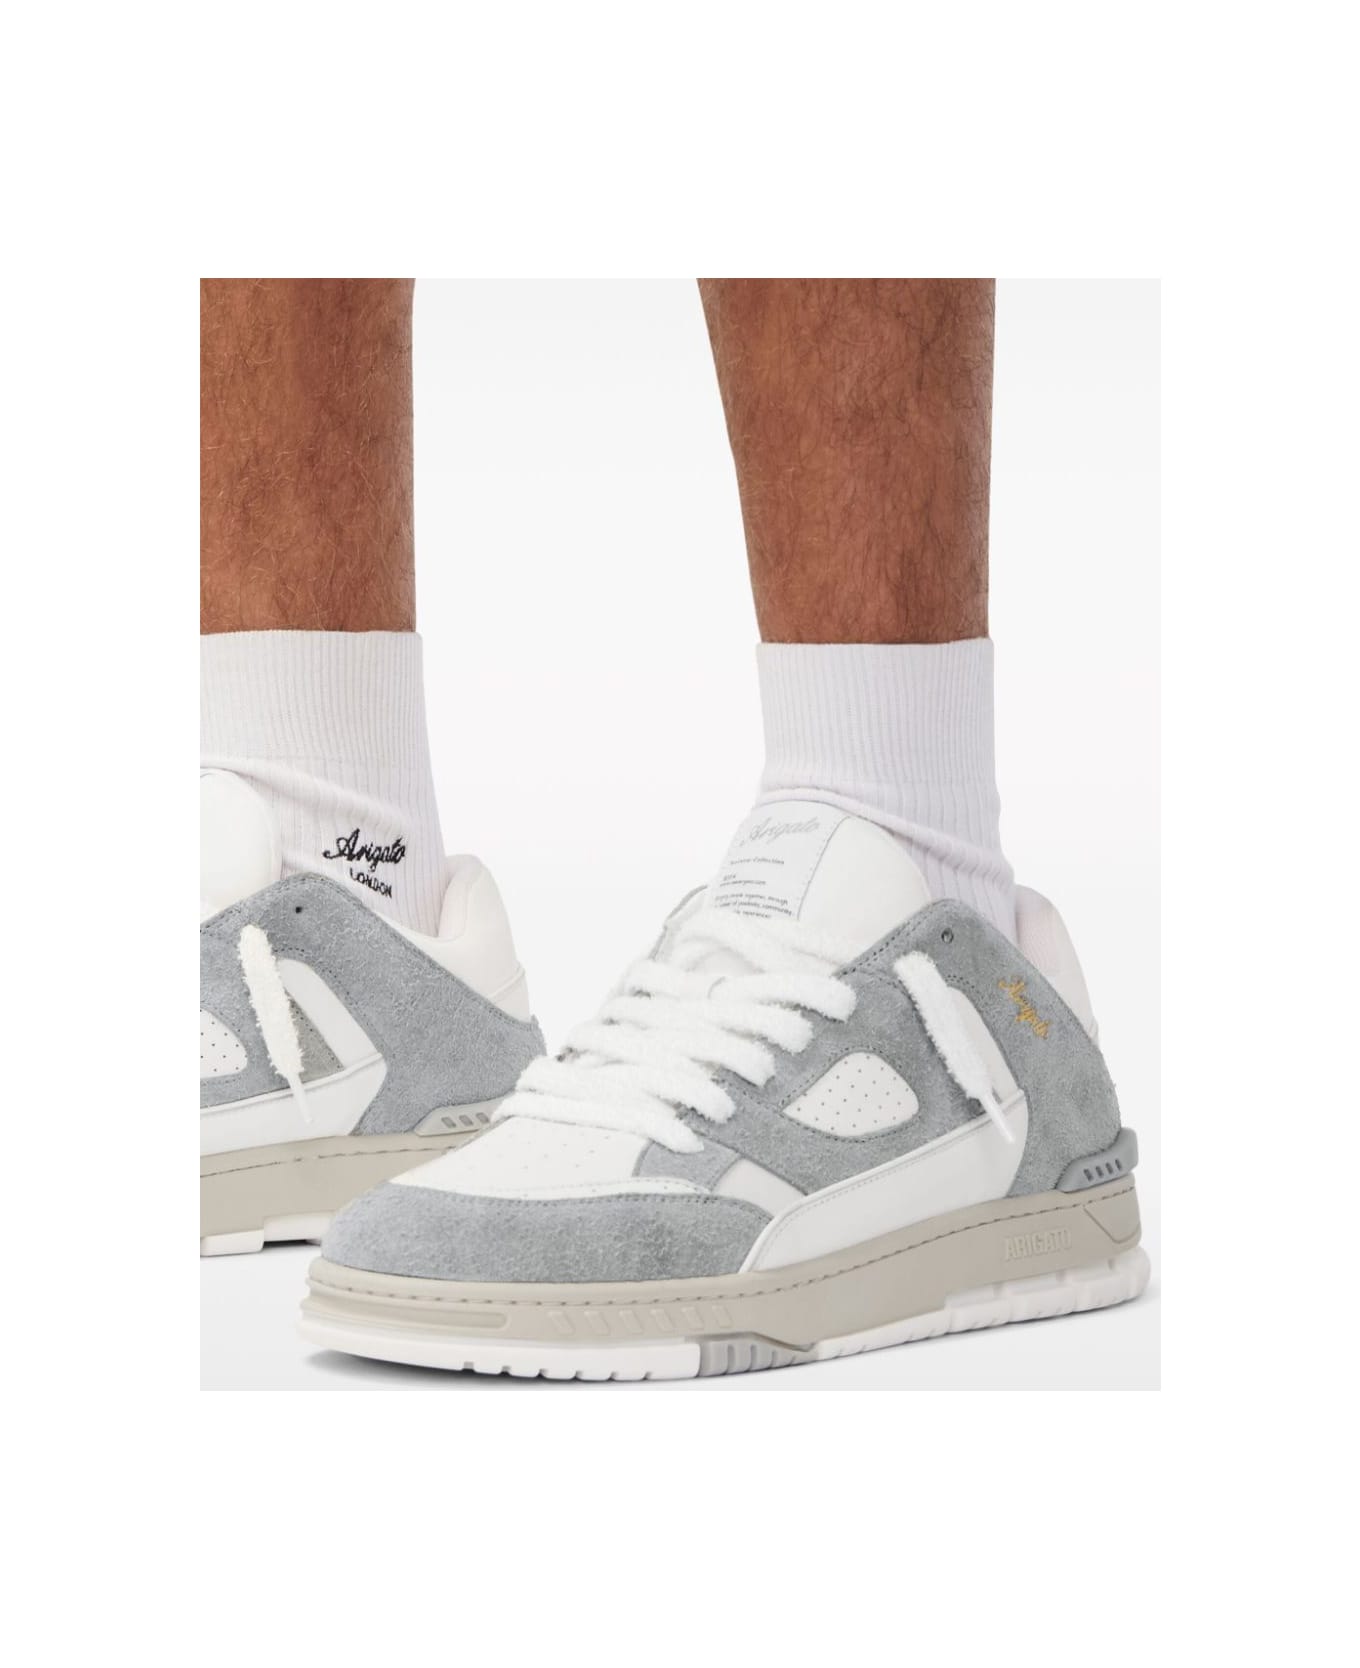 Axel Arigato Area Lo Sneaker - Grey White